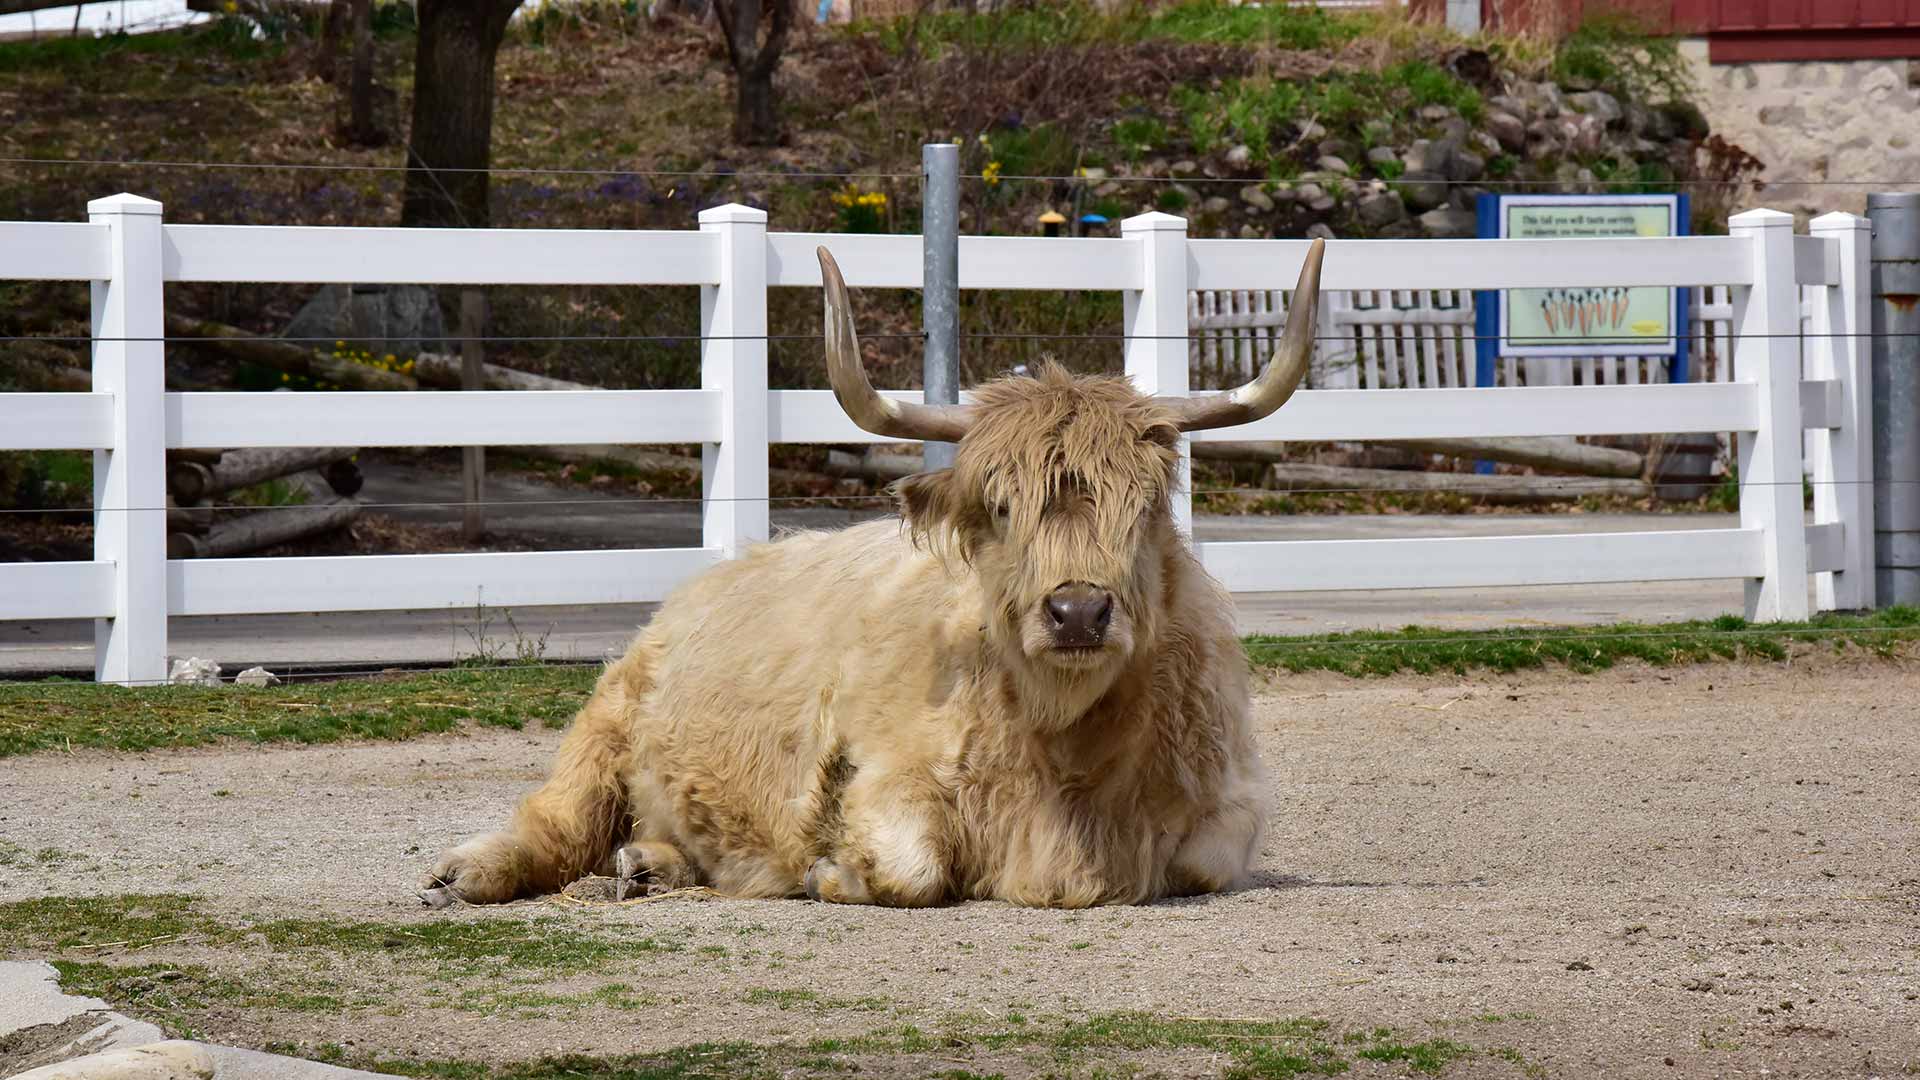 Highland Cow - Jimmys Farm, Zoo & Wildlife Park